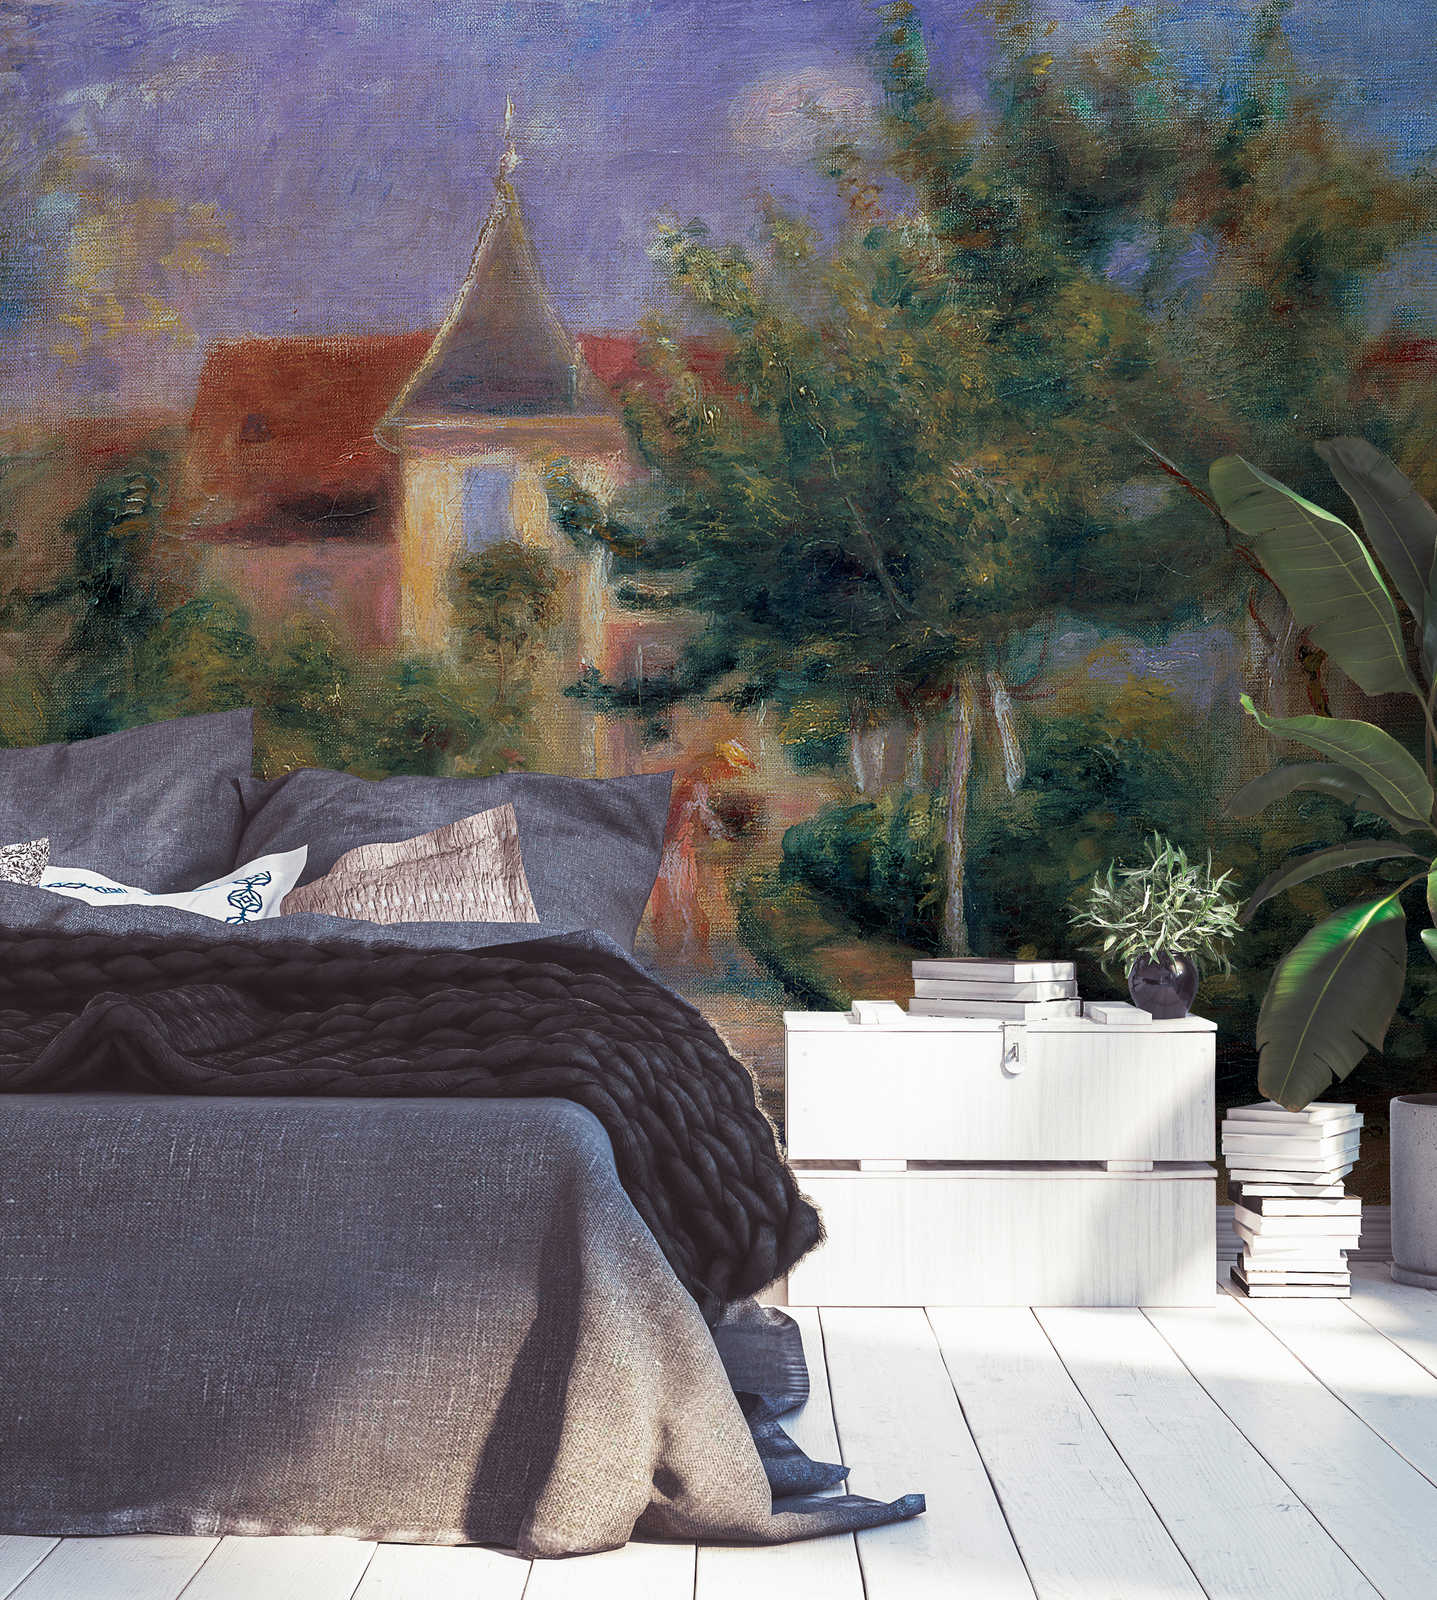             Mural "La casa de Renoir en Essoyes" de Pierre Auguste Renoir
        